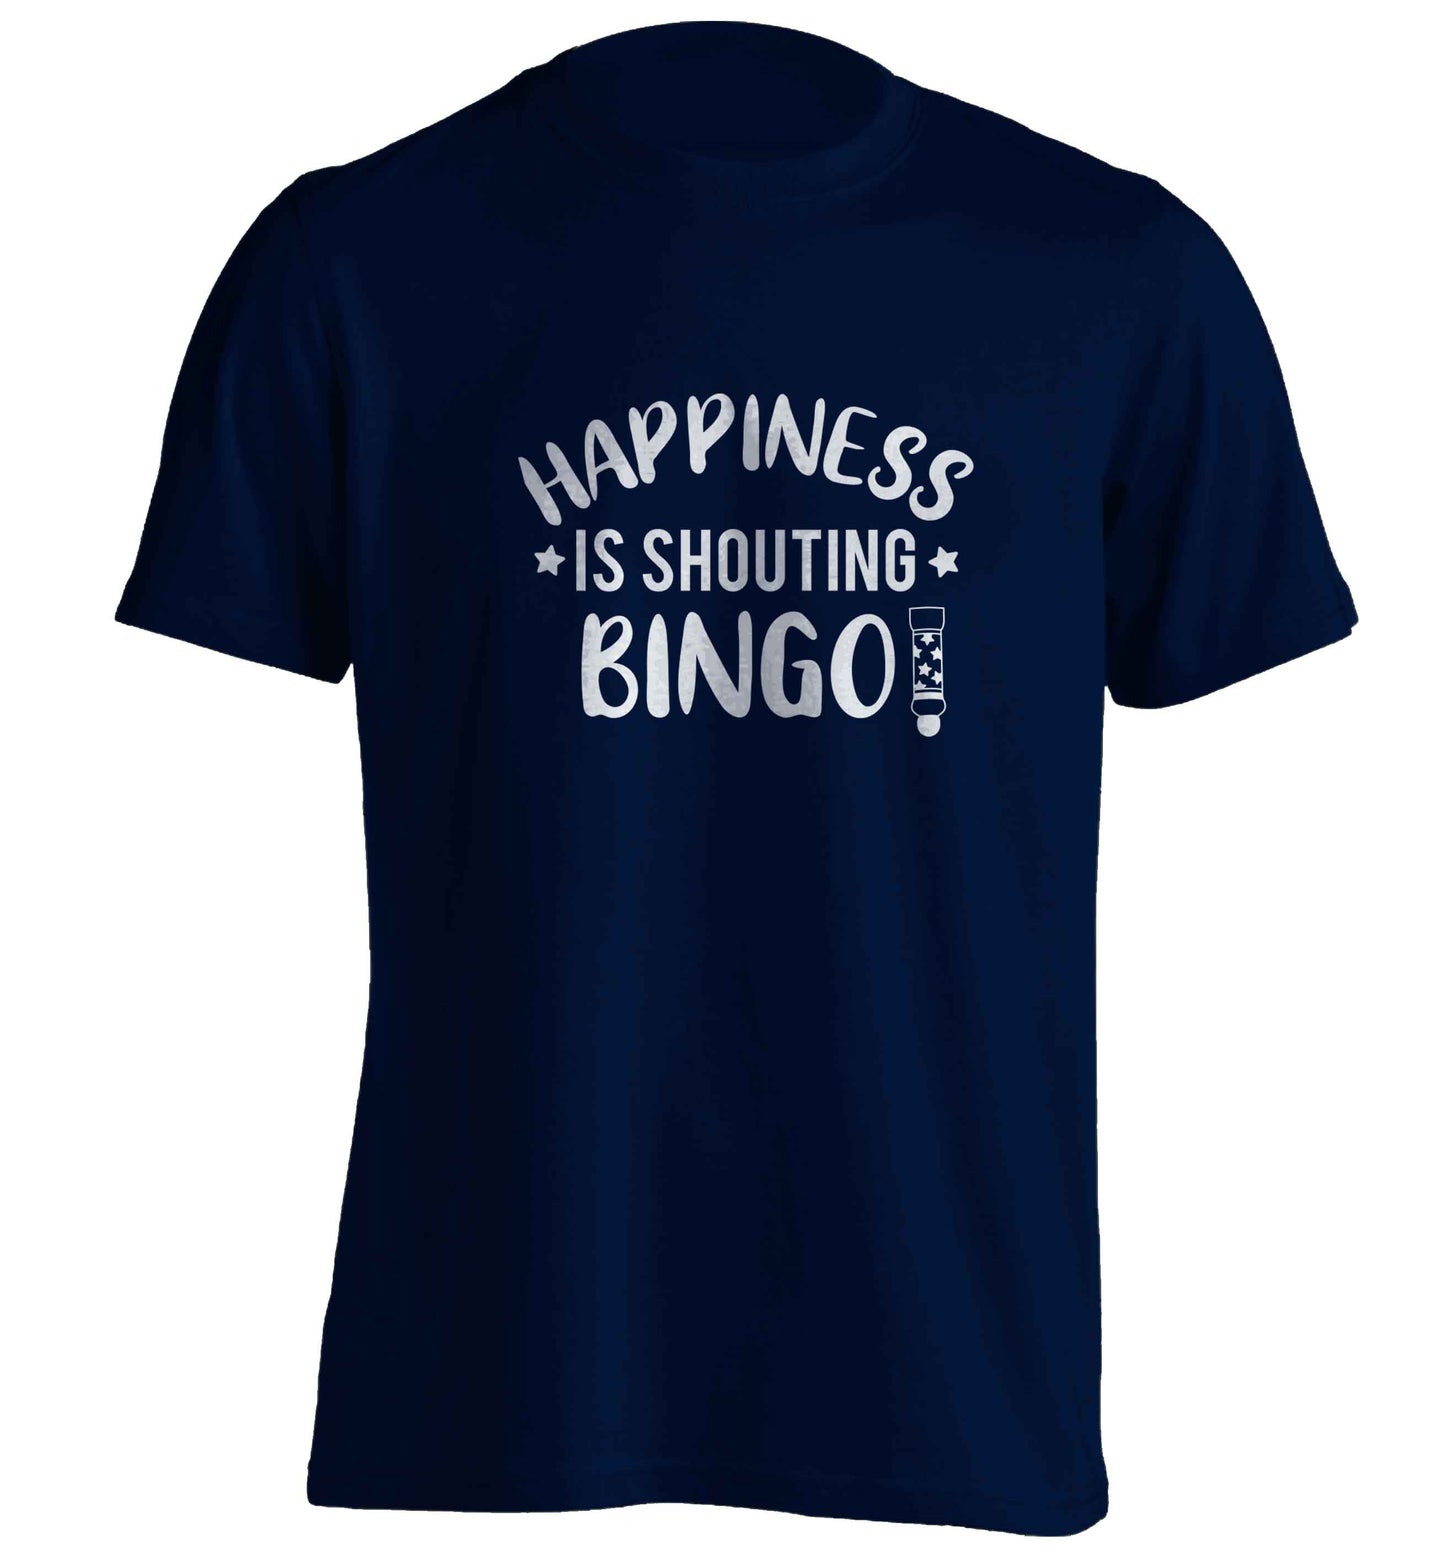 Happiness is shouting bingo! adults unisex navy Tshirt 2XL